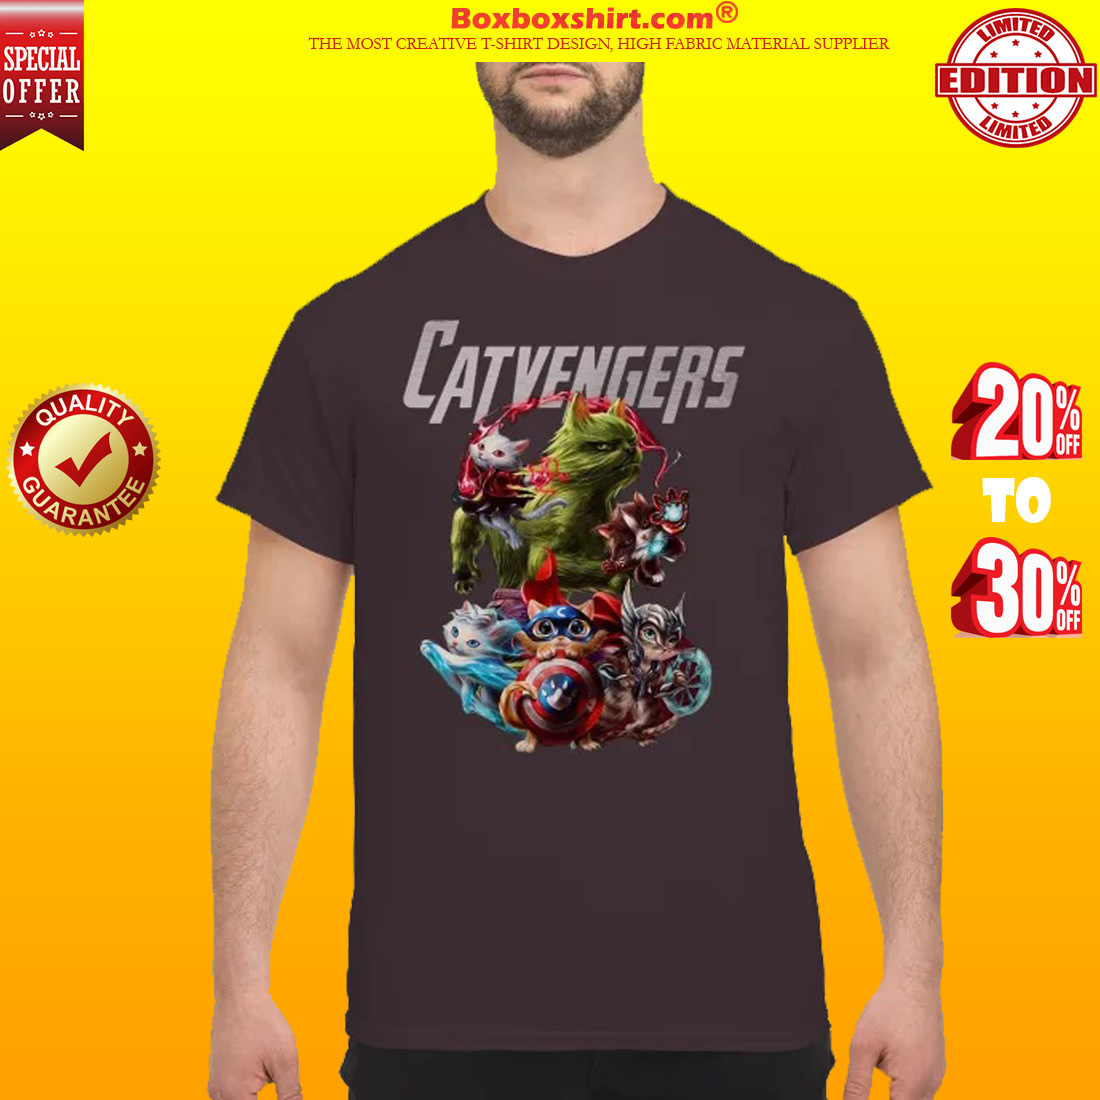 Catvengers avengers shirt